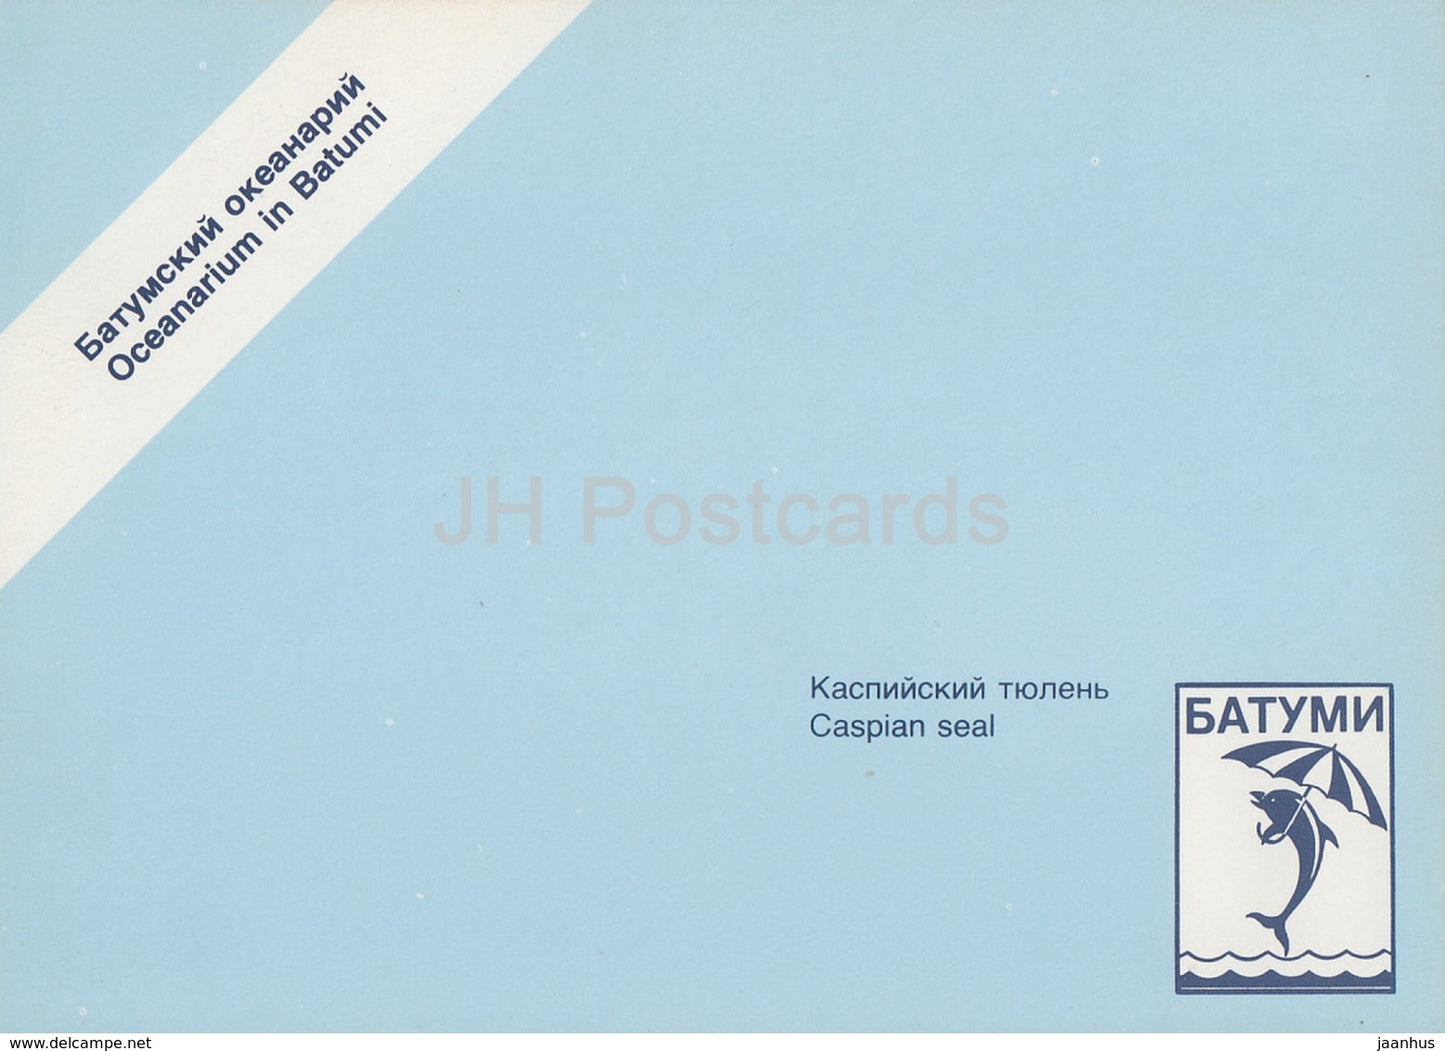 Caspian seal - Pusa caspica - Oceanarium in Batumi - 1989 - Georgia USSR - unused - JH Postcards